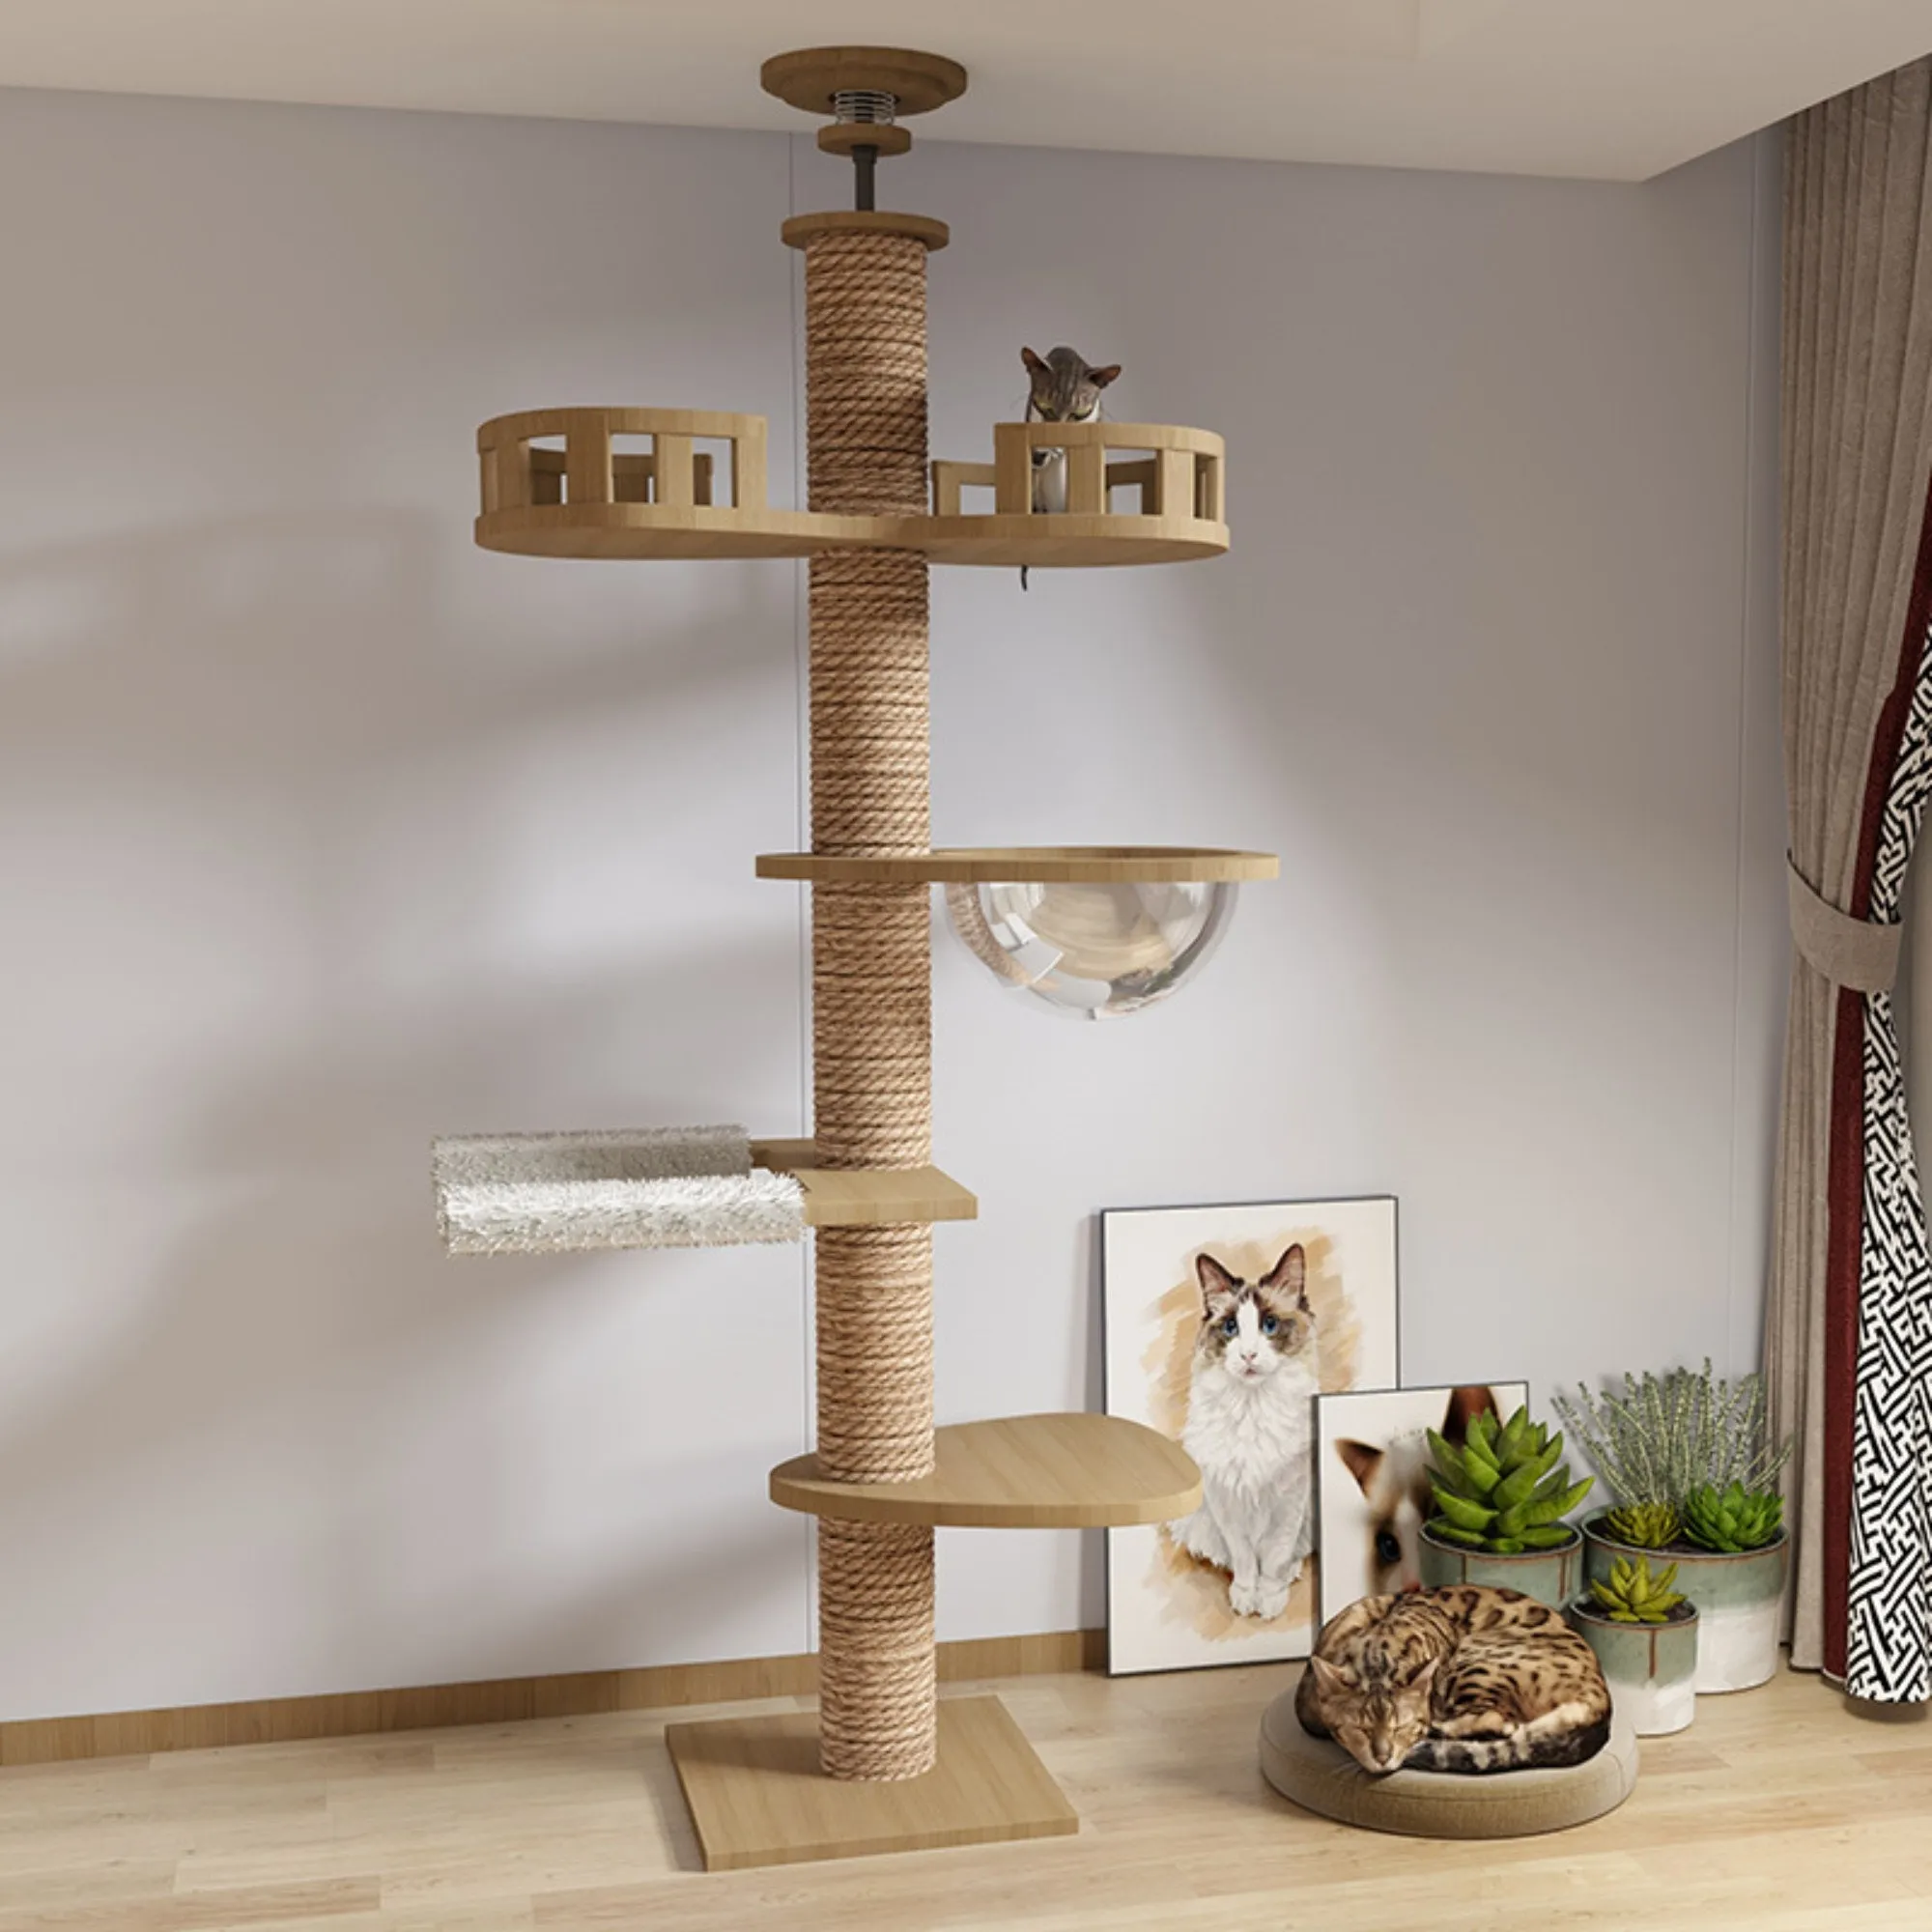 Struttura in legno per gatto struttura regolabile altezza albero del gatto soffitto albero a soffitto torre a 5 livelli